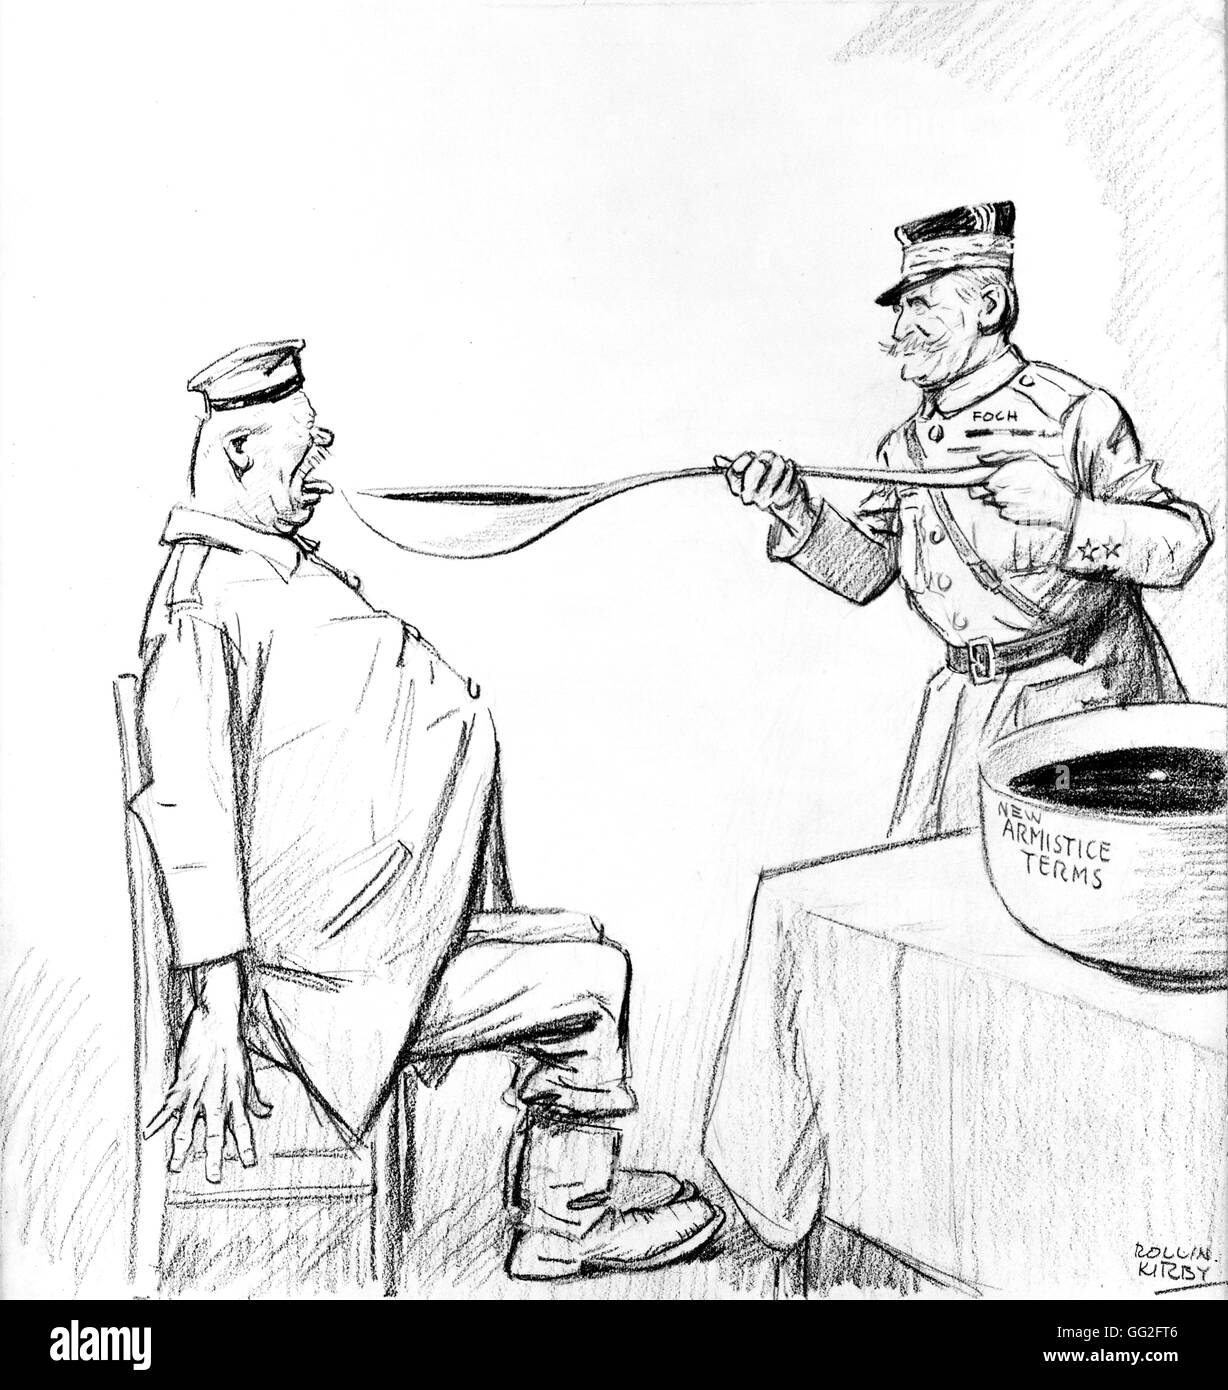 La prima guerra mondiale. La caricatura da Kirby: Foch e il Trattato di armistizio imposto sulla Germania, 11 novembre 1918. Foto Stock